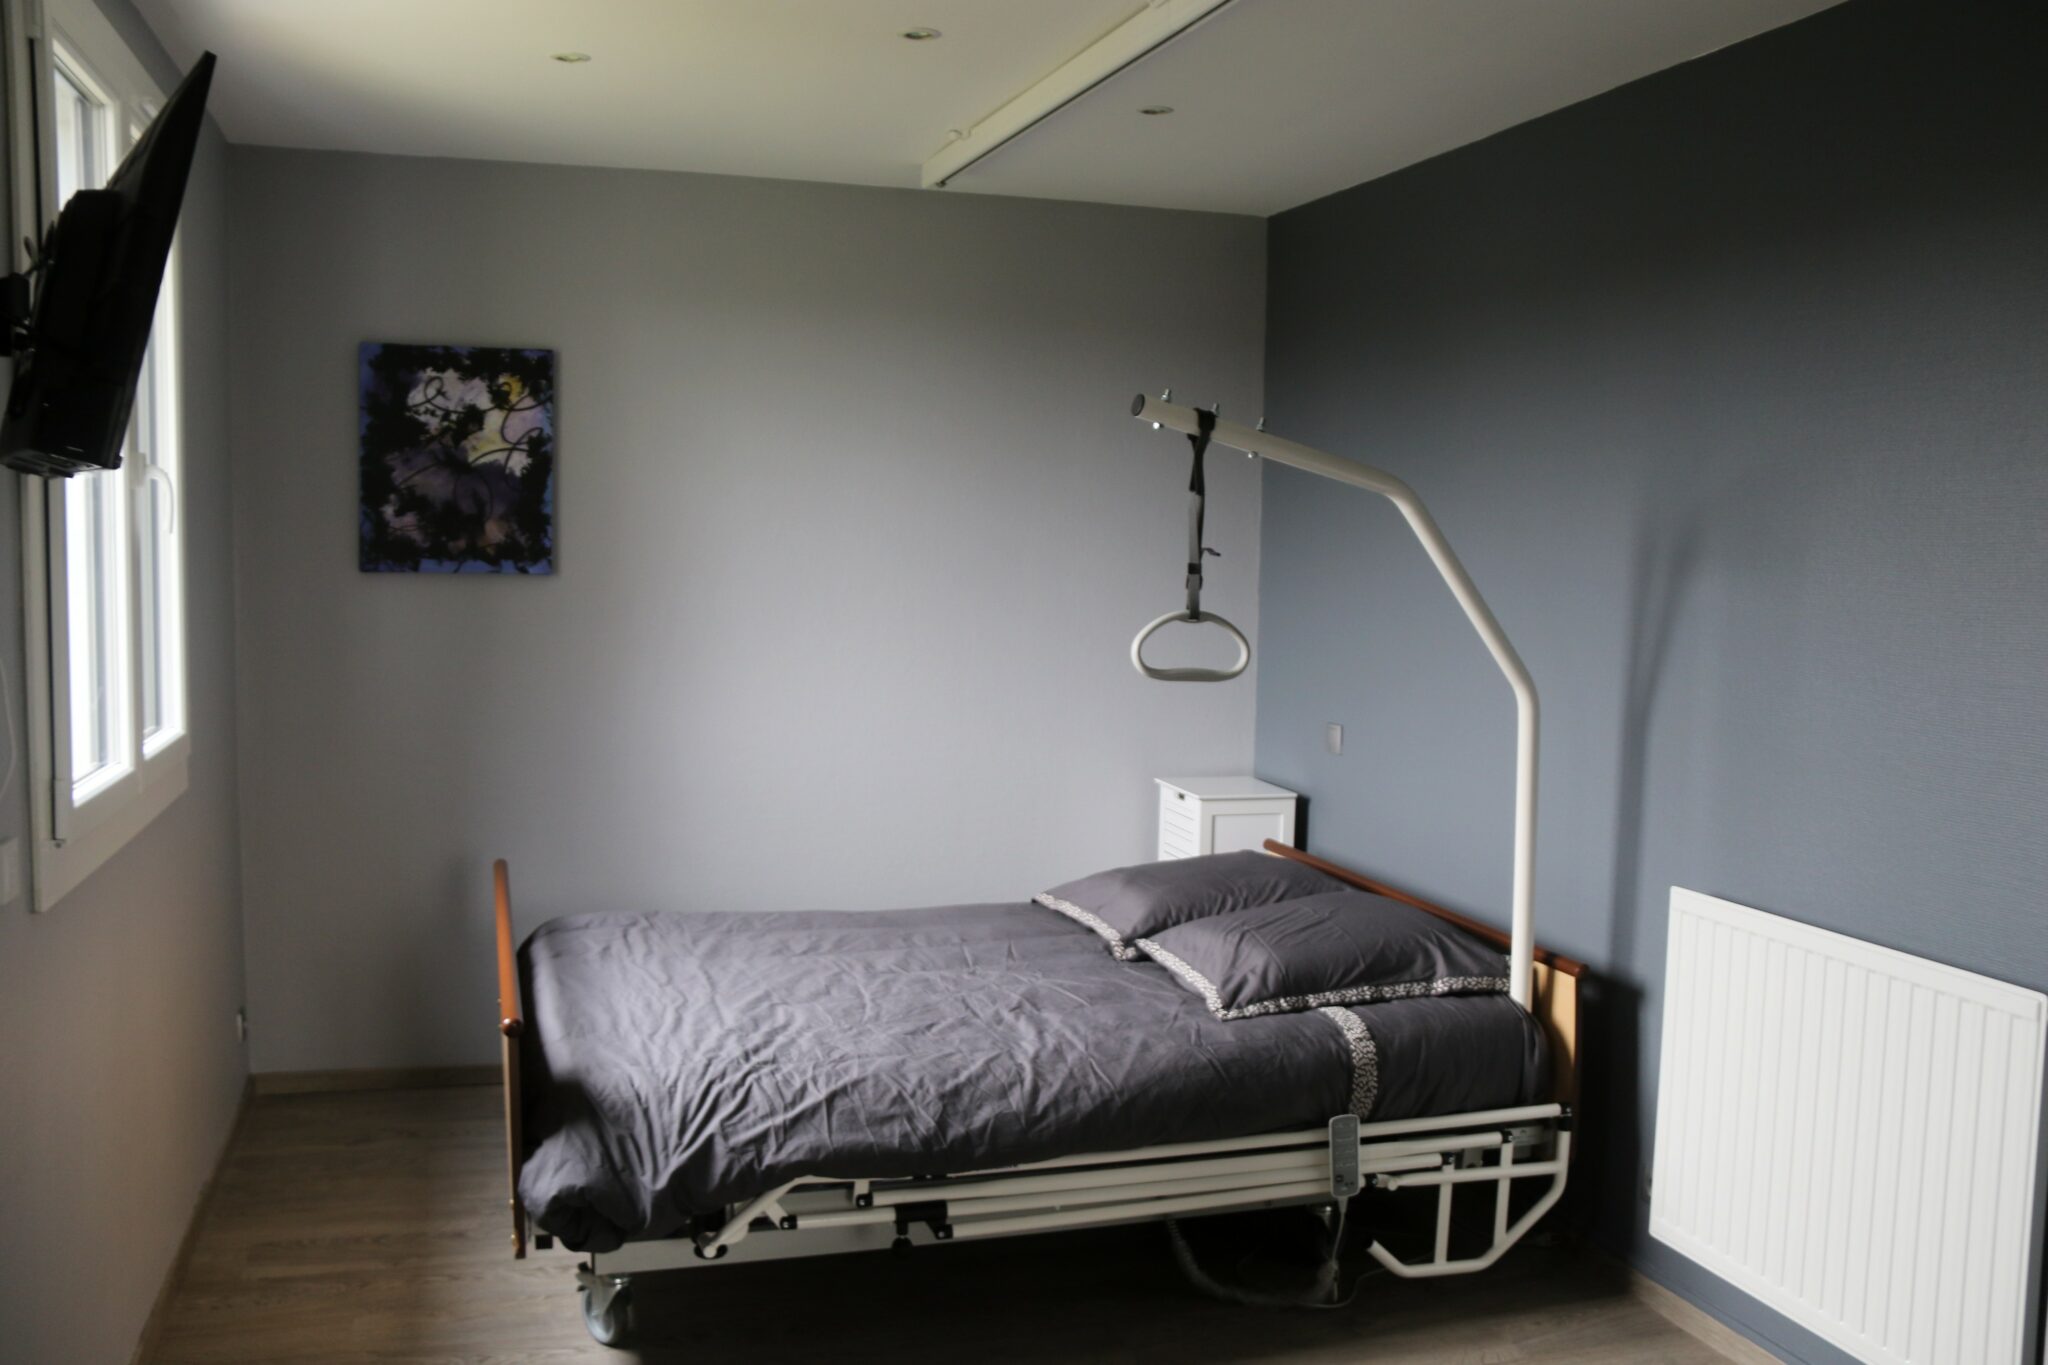 Chambre avec lit médicalisé 3 fonctions électriques